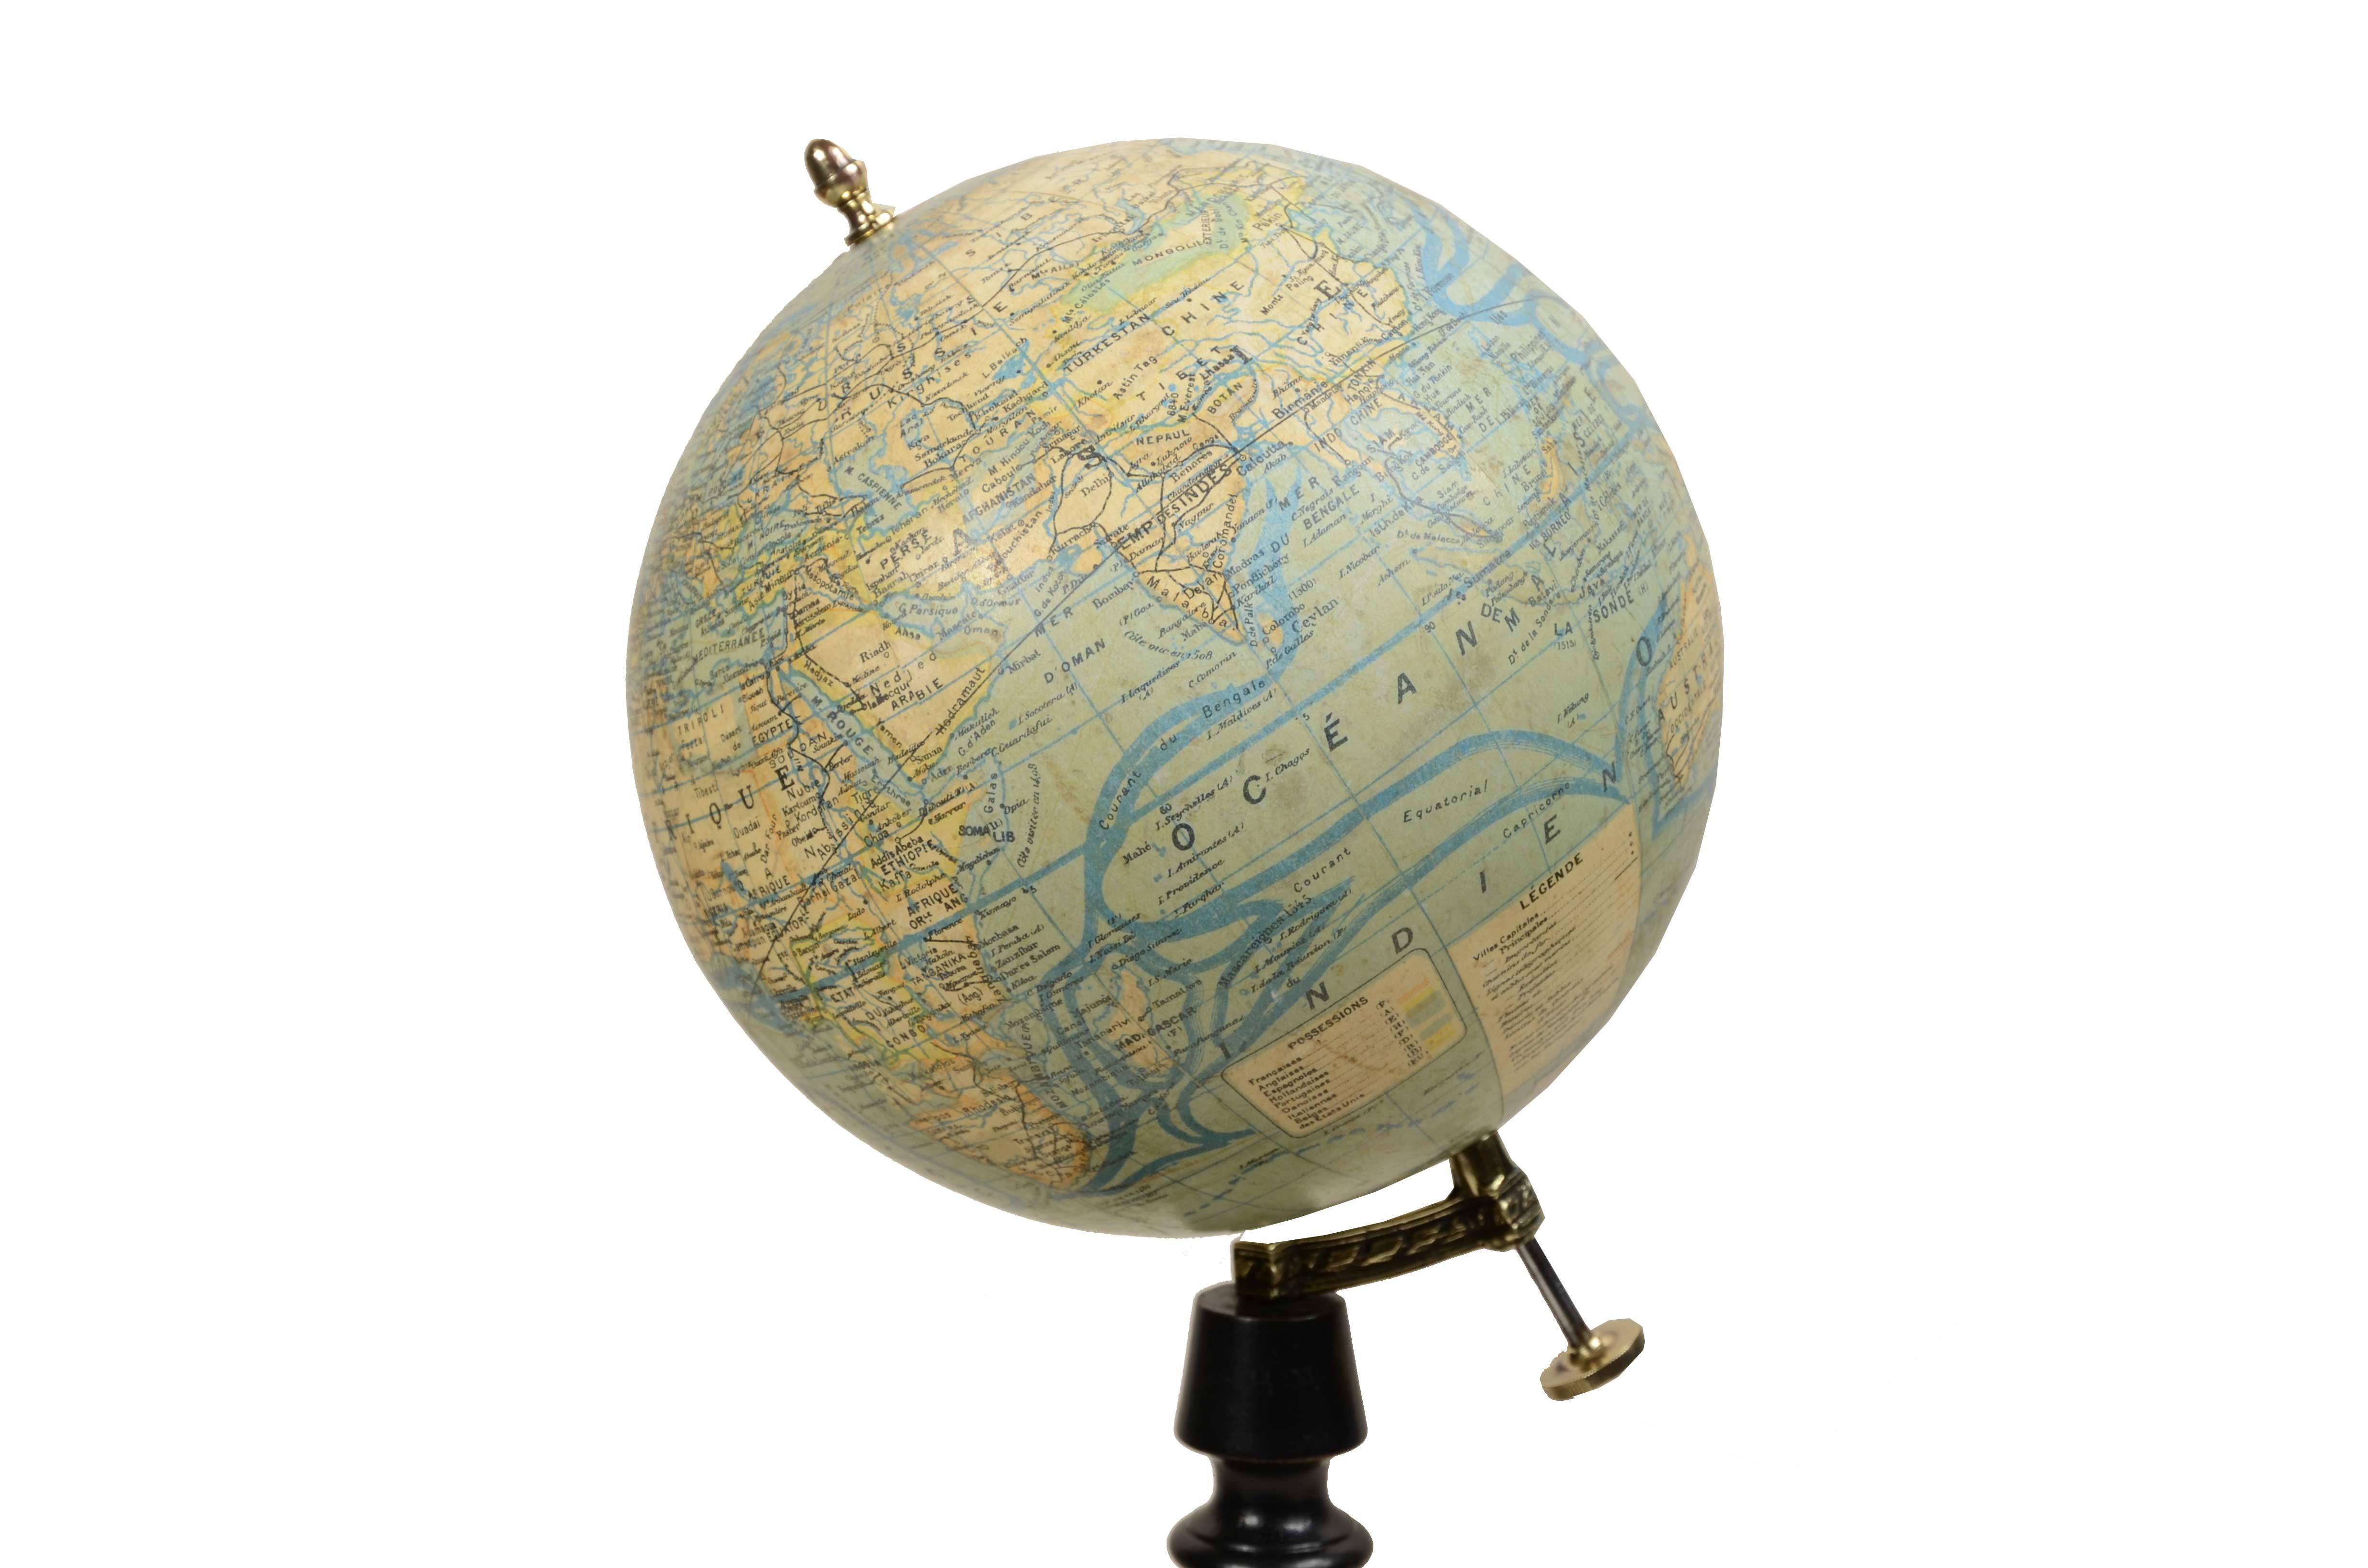 Weltkugel  terrestrre, herausgegeben in den 1930er Jahren von dem französischen Geographen J. Forest, die Kartusche lautet Dressé par J. FOREST Editeur Paris 17 - 19 Rue de Buci. Zusätzlich zu der sehr gut gezeichneten räumlichen Karte werden auch